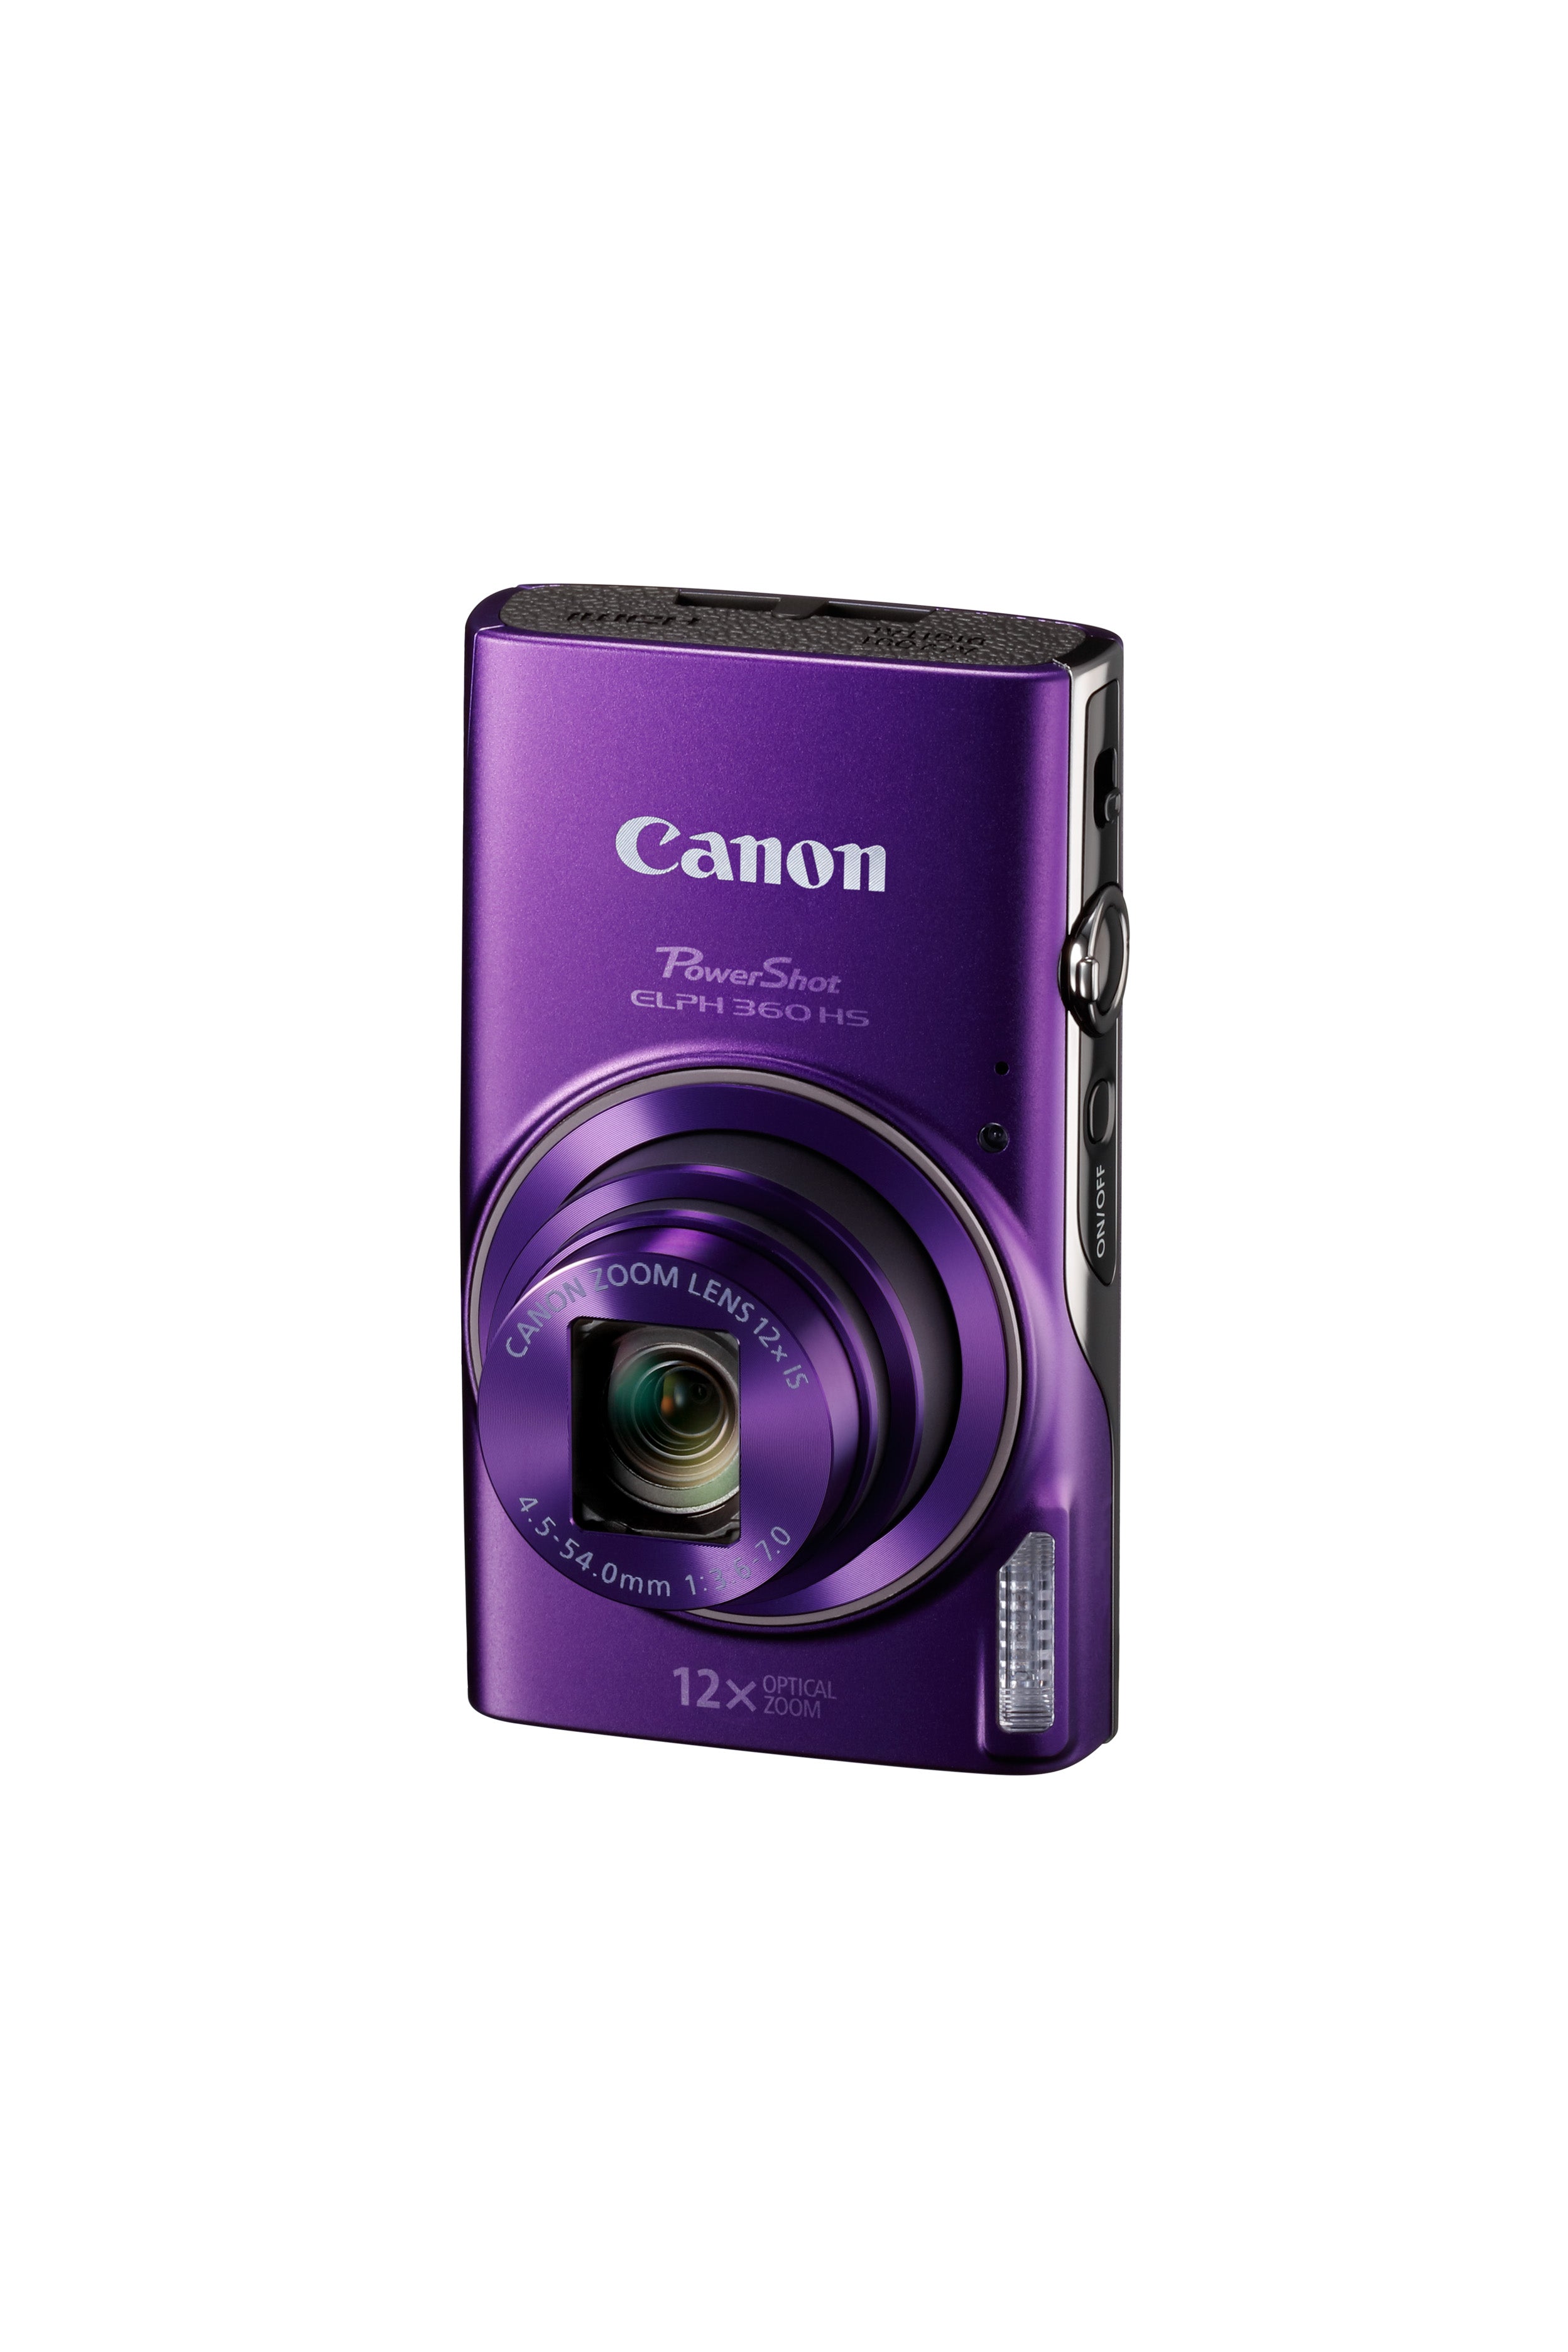 Canon Powershot Elph 360 HS - noir